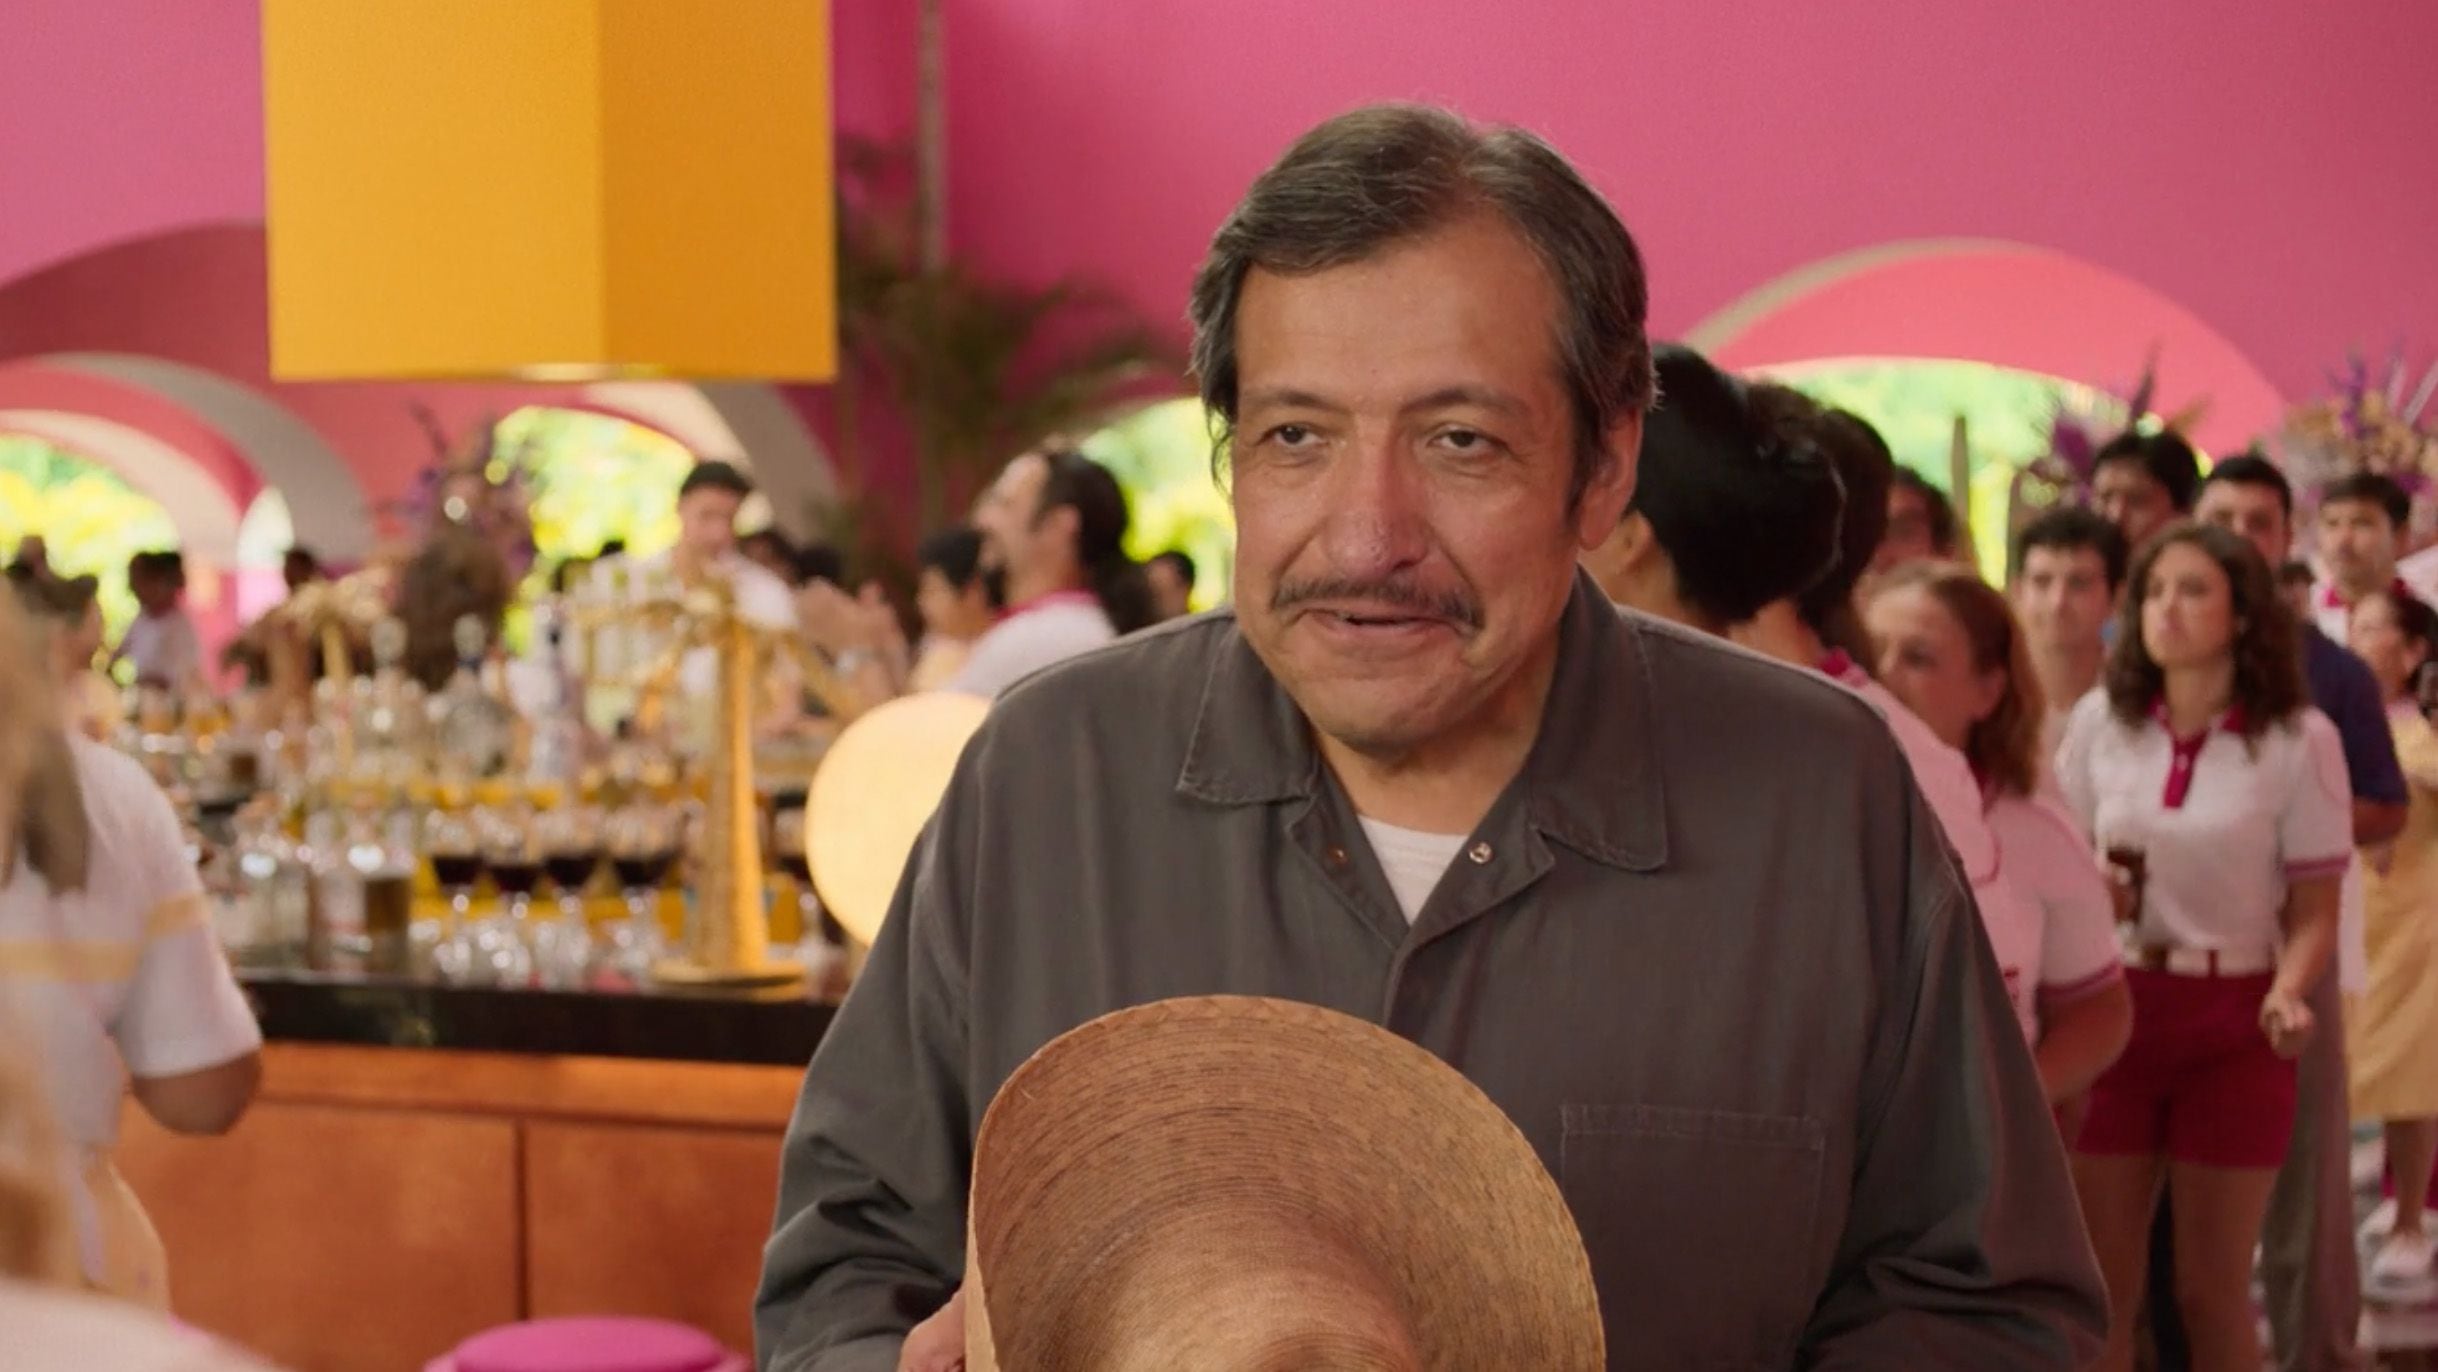 Ramón Álvarez es Paco en la serie "Acapulco".